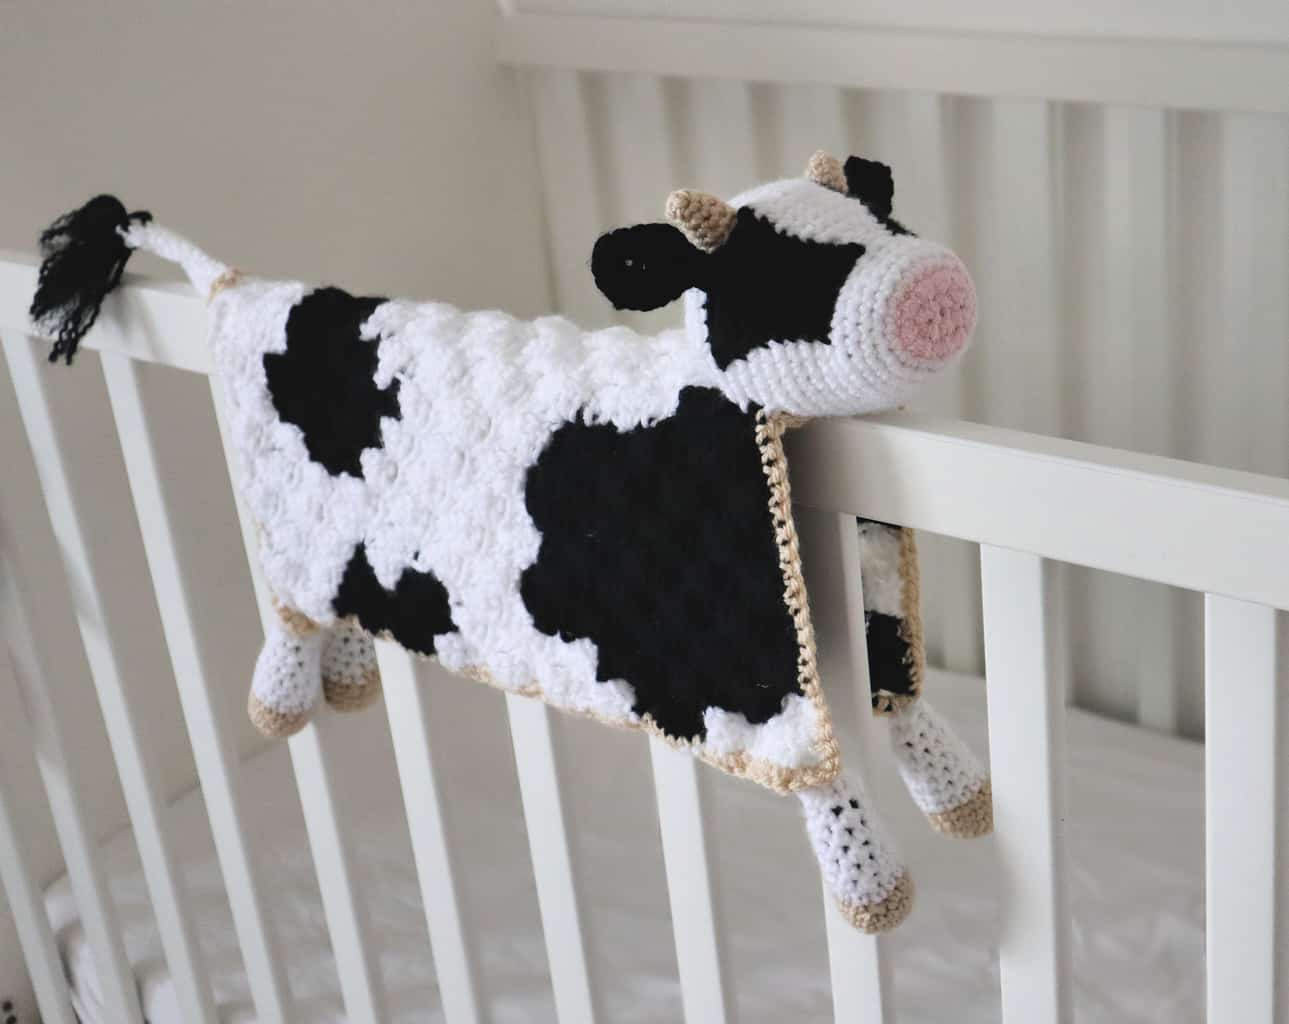 Little Darling Baby Blanket pattern by Deborah O'Leary